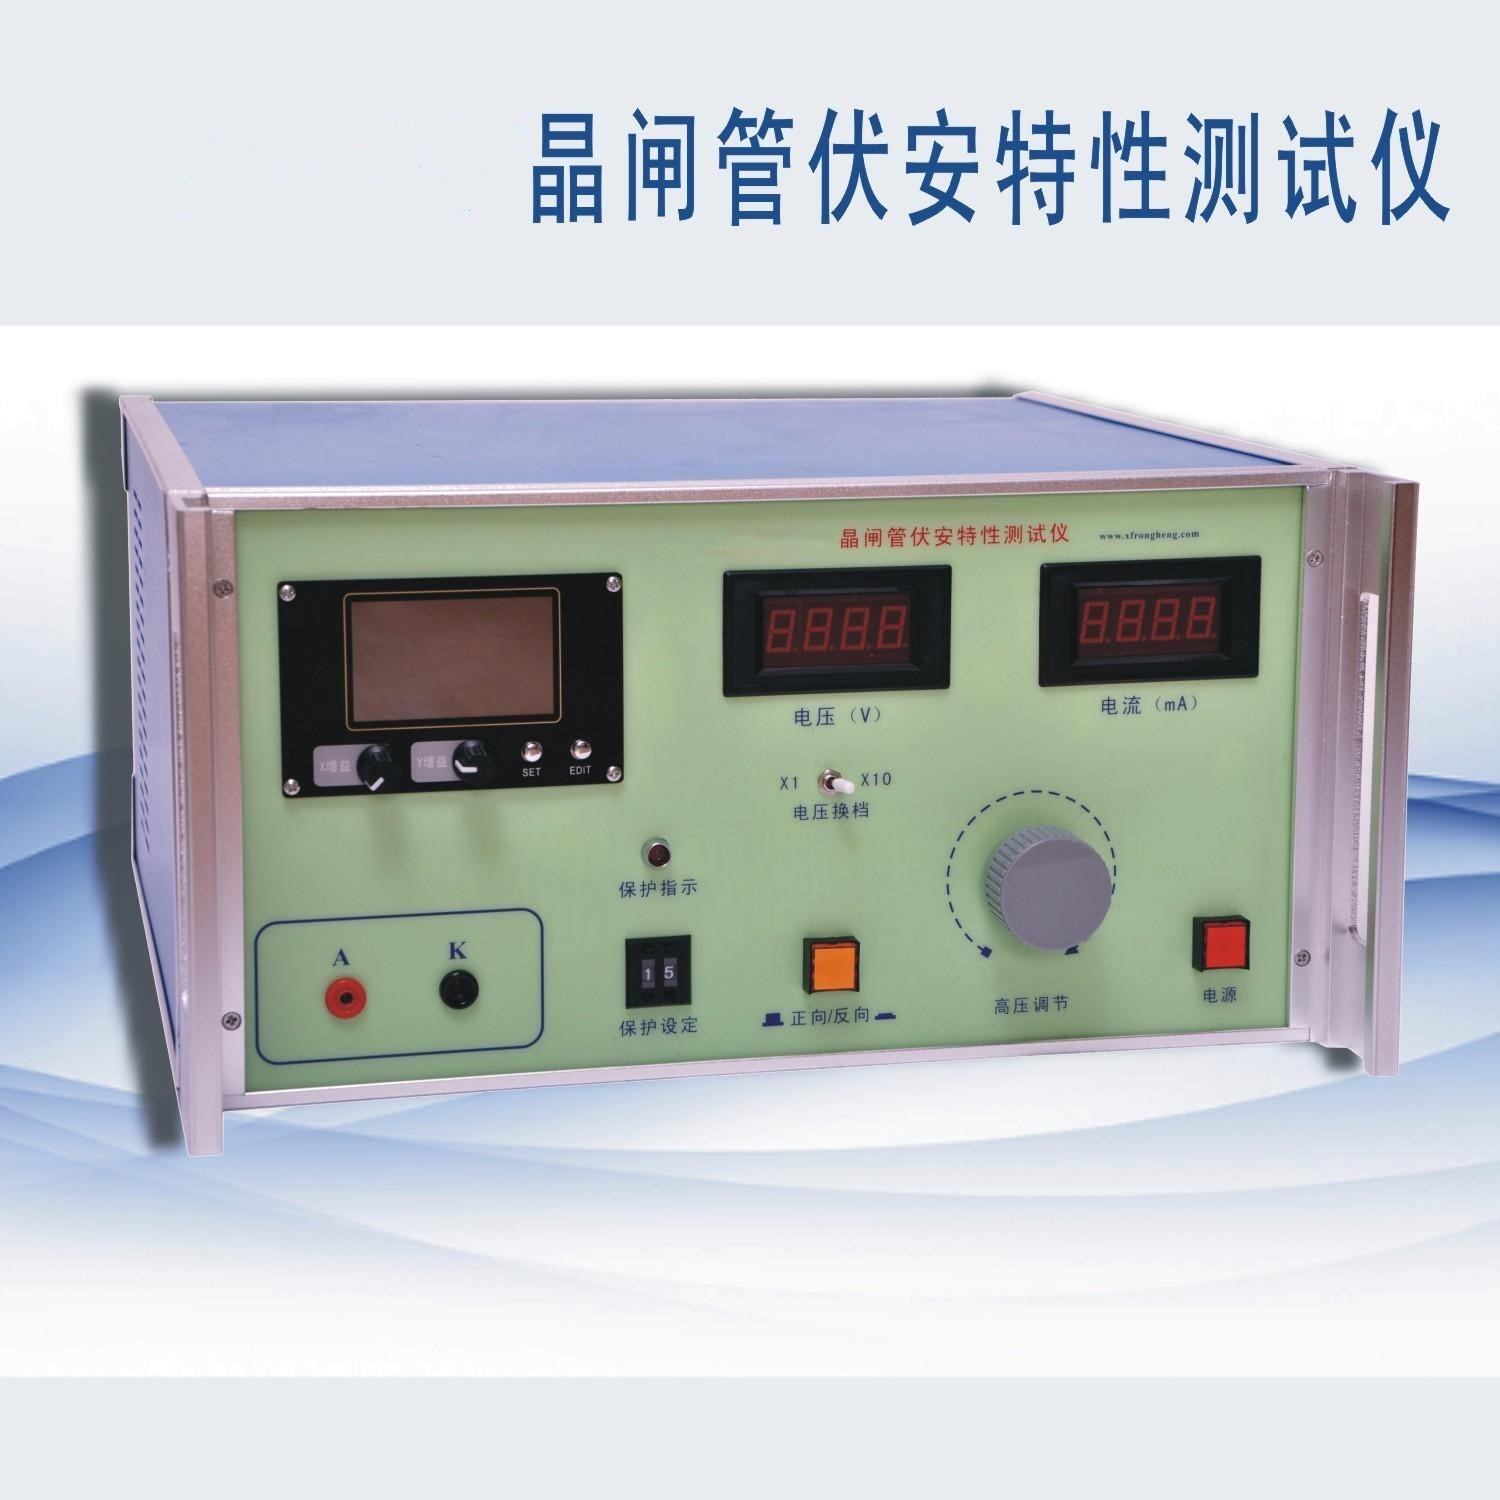 晶闸管测试仪0-6000V 型号:KM1-DBC-025  库号：M208254 晶闸管测试仪0-6000V,型号KM1-DBC-025,库号M208254